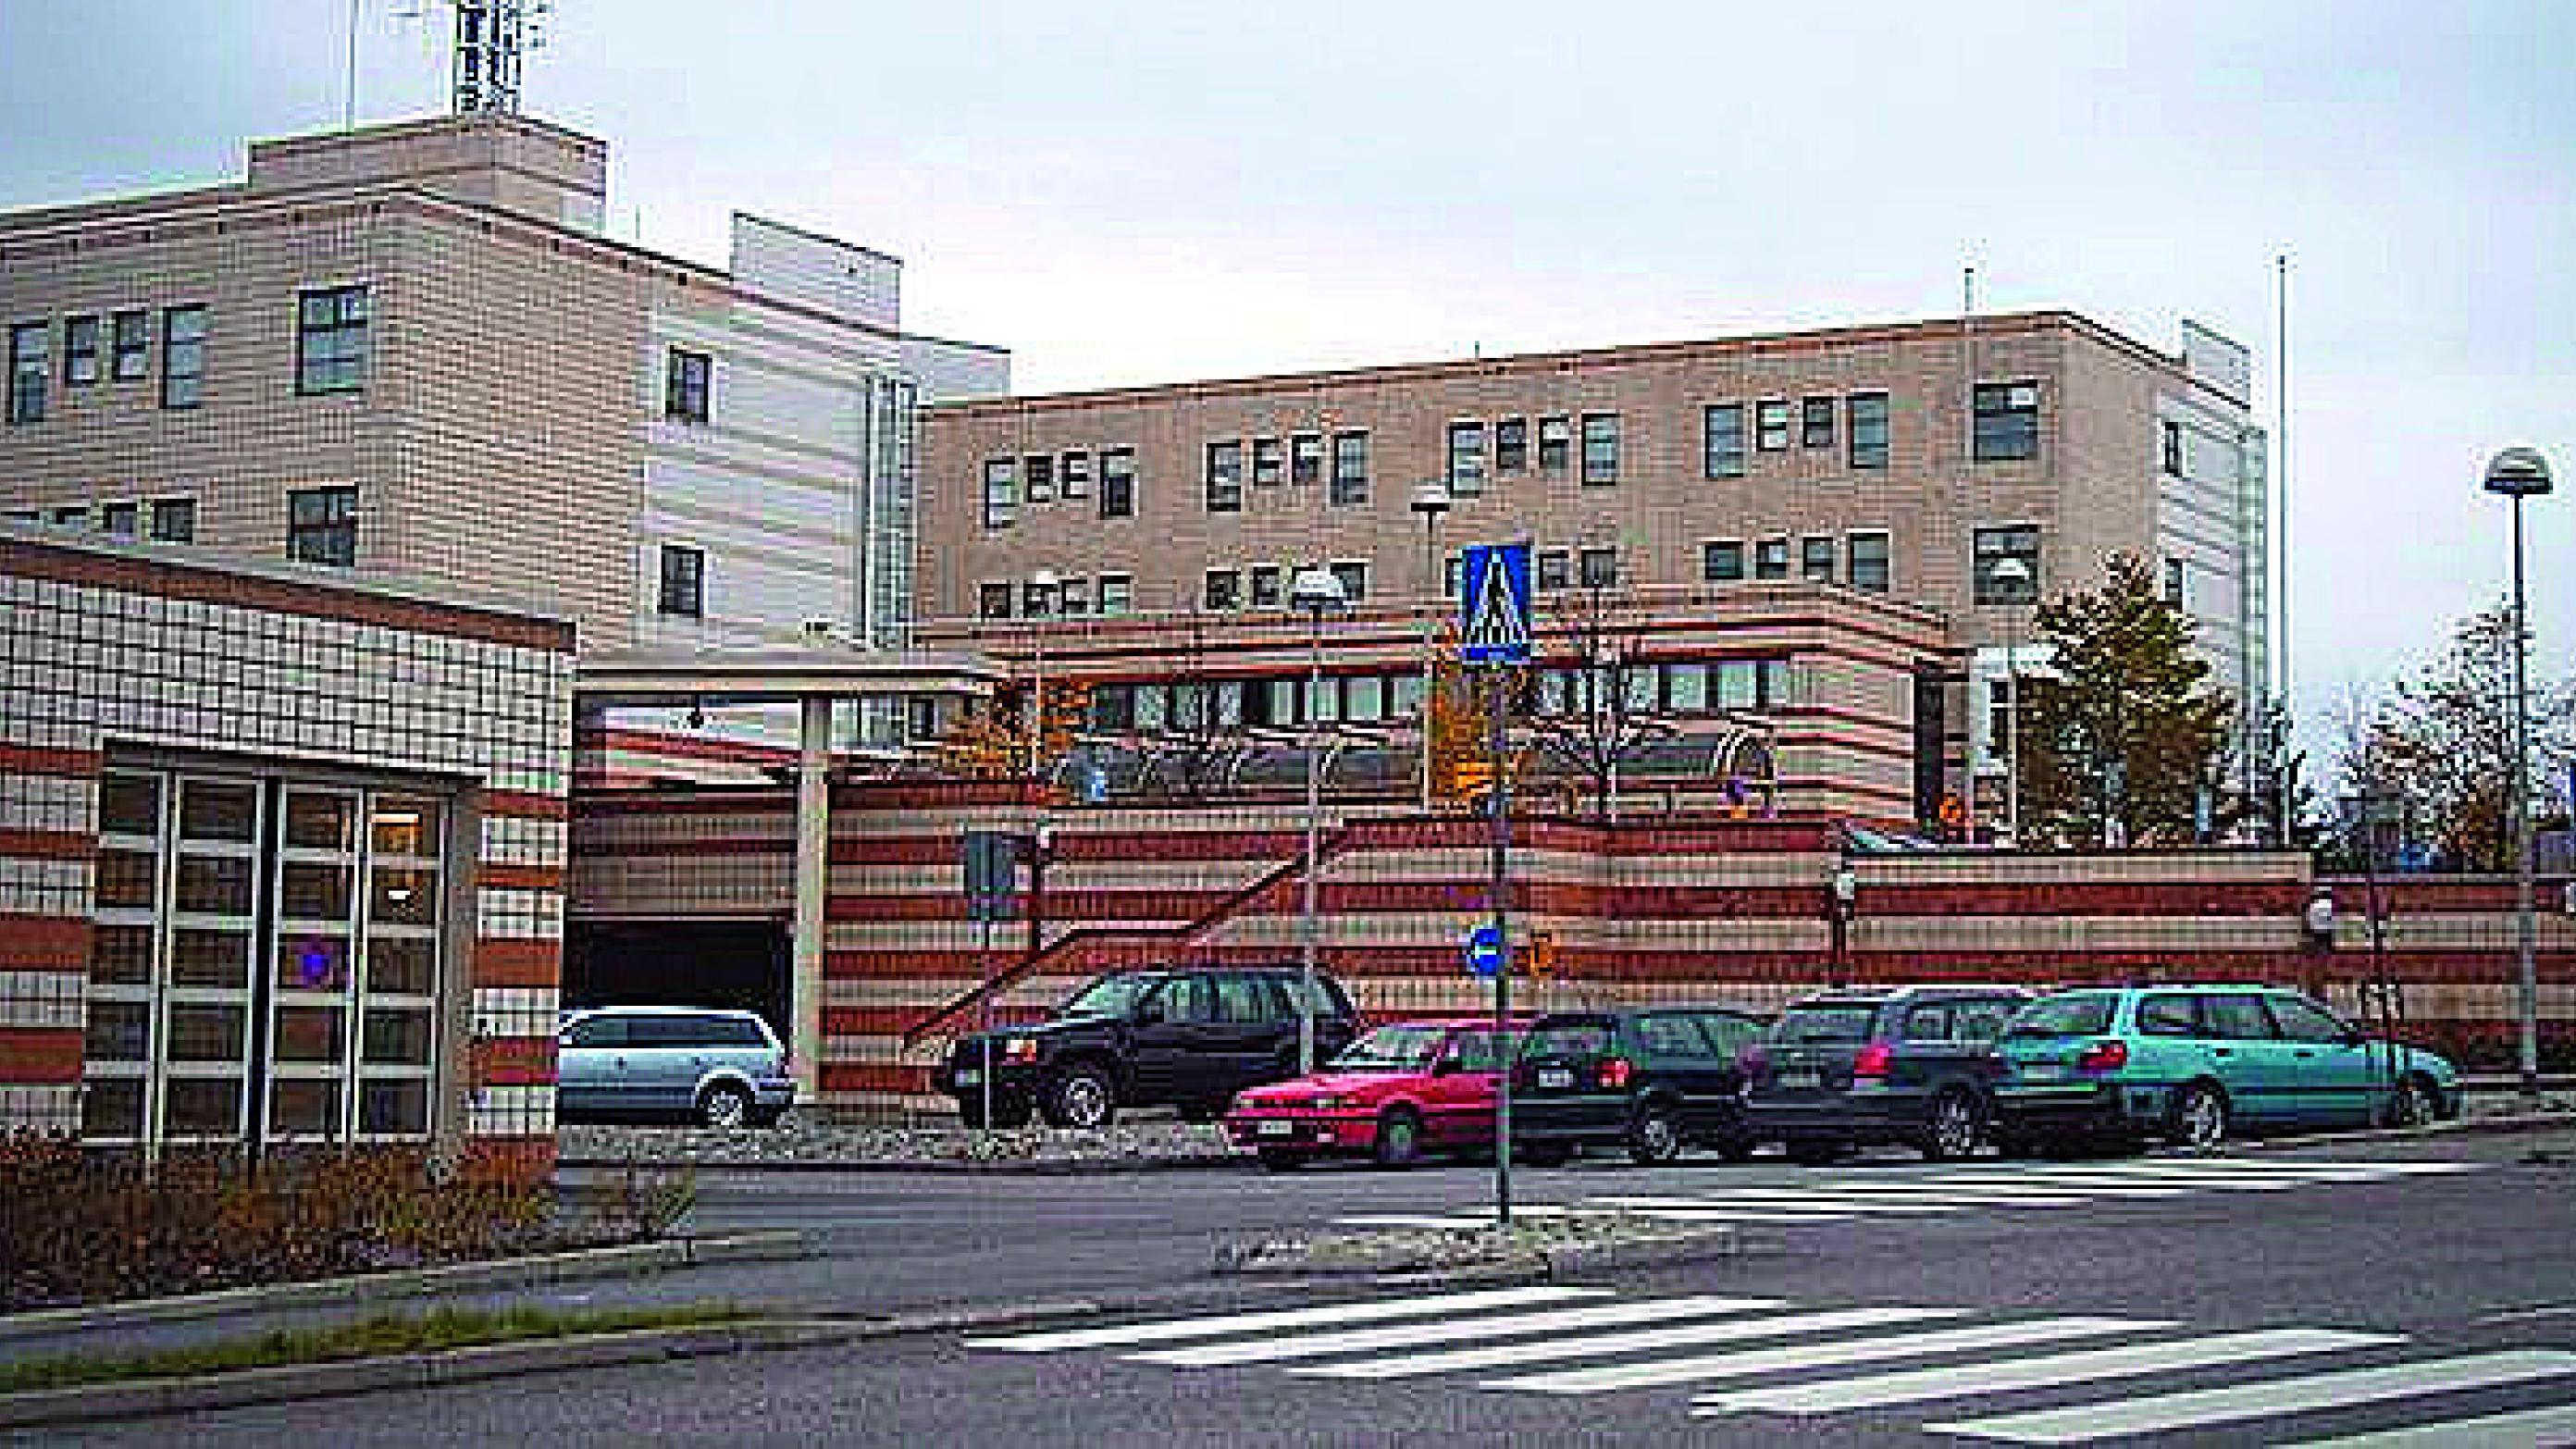 Bag reformen ligger en udbredt enighed om, at det offentligt finansierede sundhedsvæsen bør centraliseres. Foto af Peijas hospital i Vantaa, Finland: Wikipedia